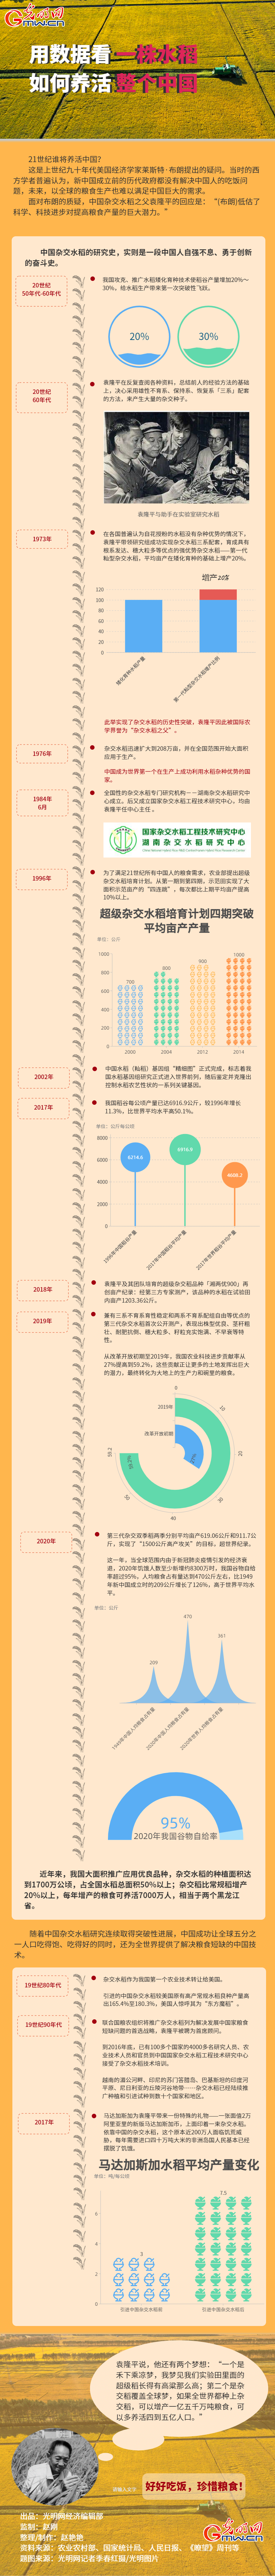 数据图解丨用数据 看一株水稻如何养活整个中国